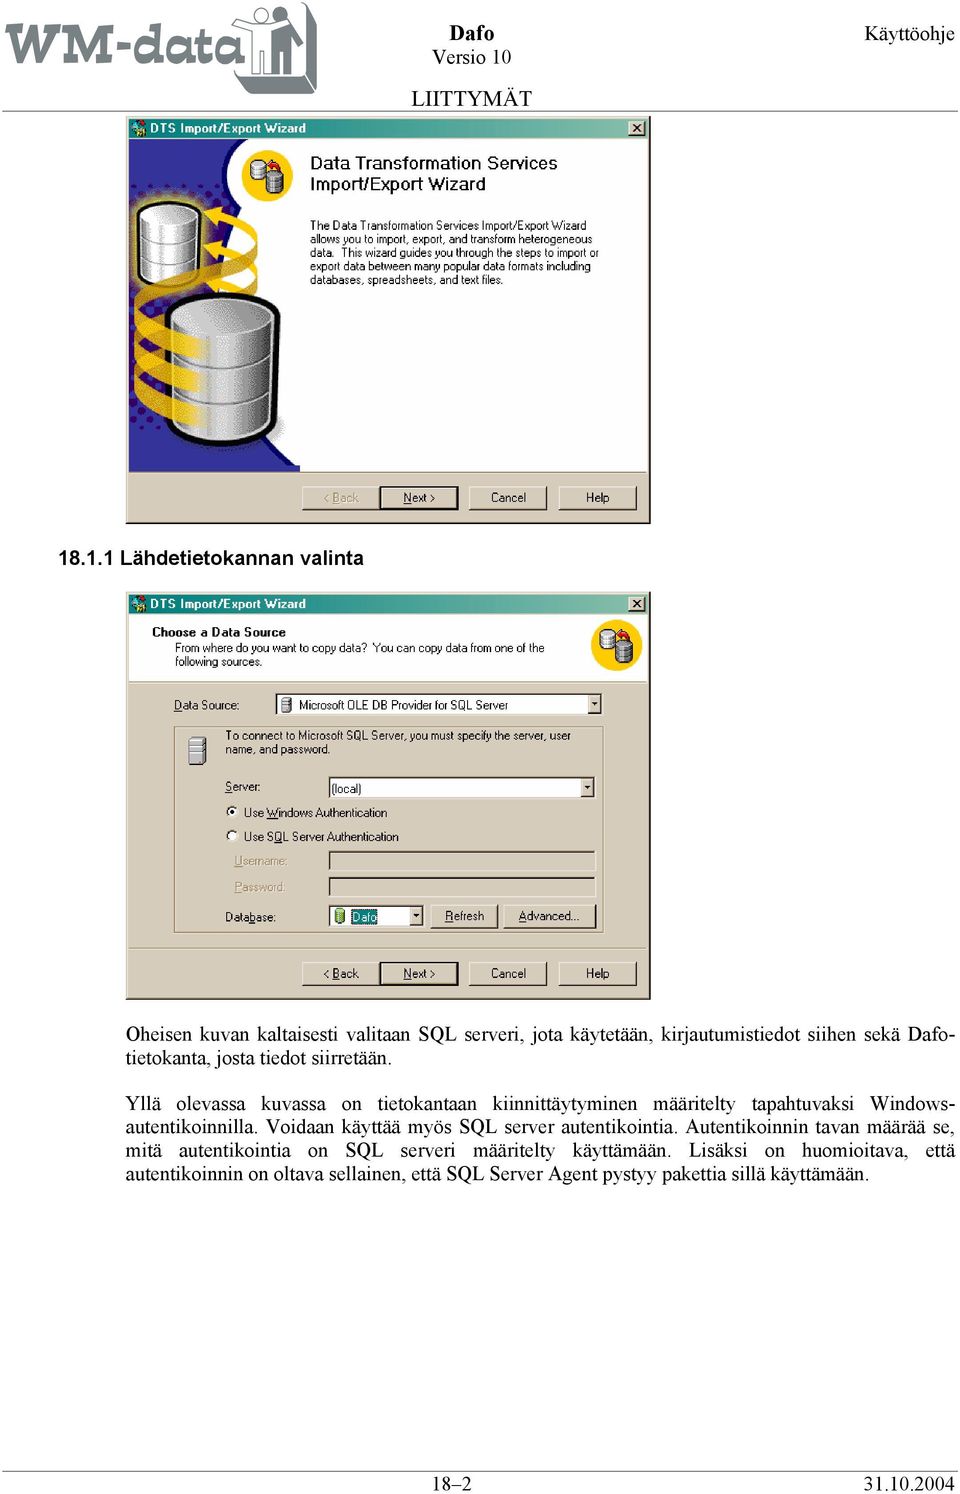 Yllä olevassa kuvassa on tietokantaan kiinnittäytyminen määritelty tapahtuvaksi Windowsautentikoinnilla.